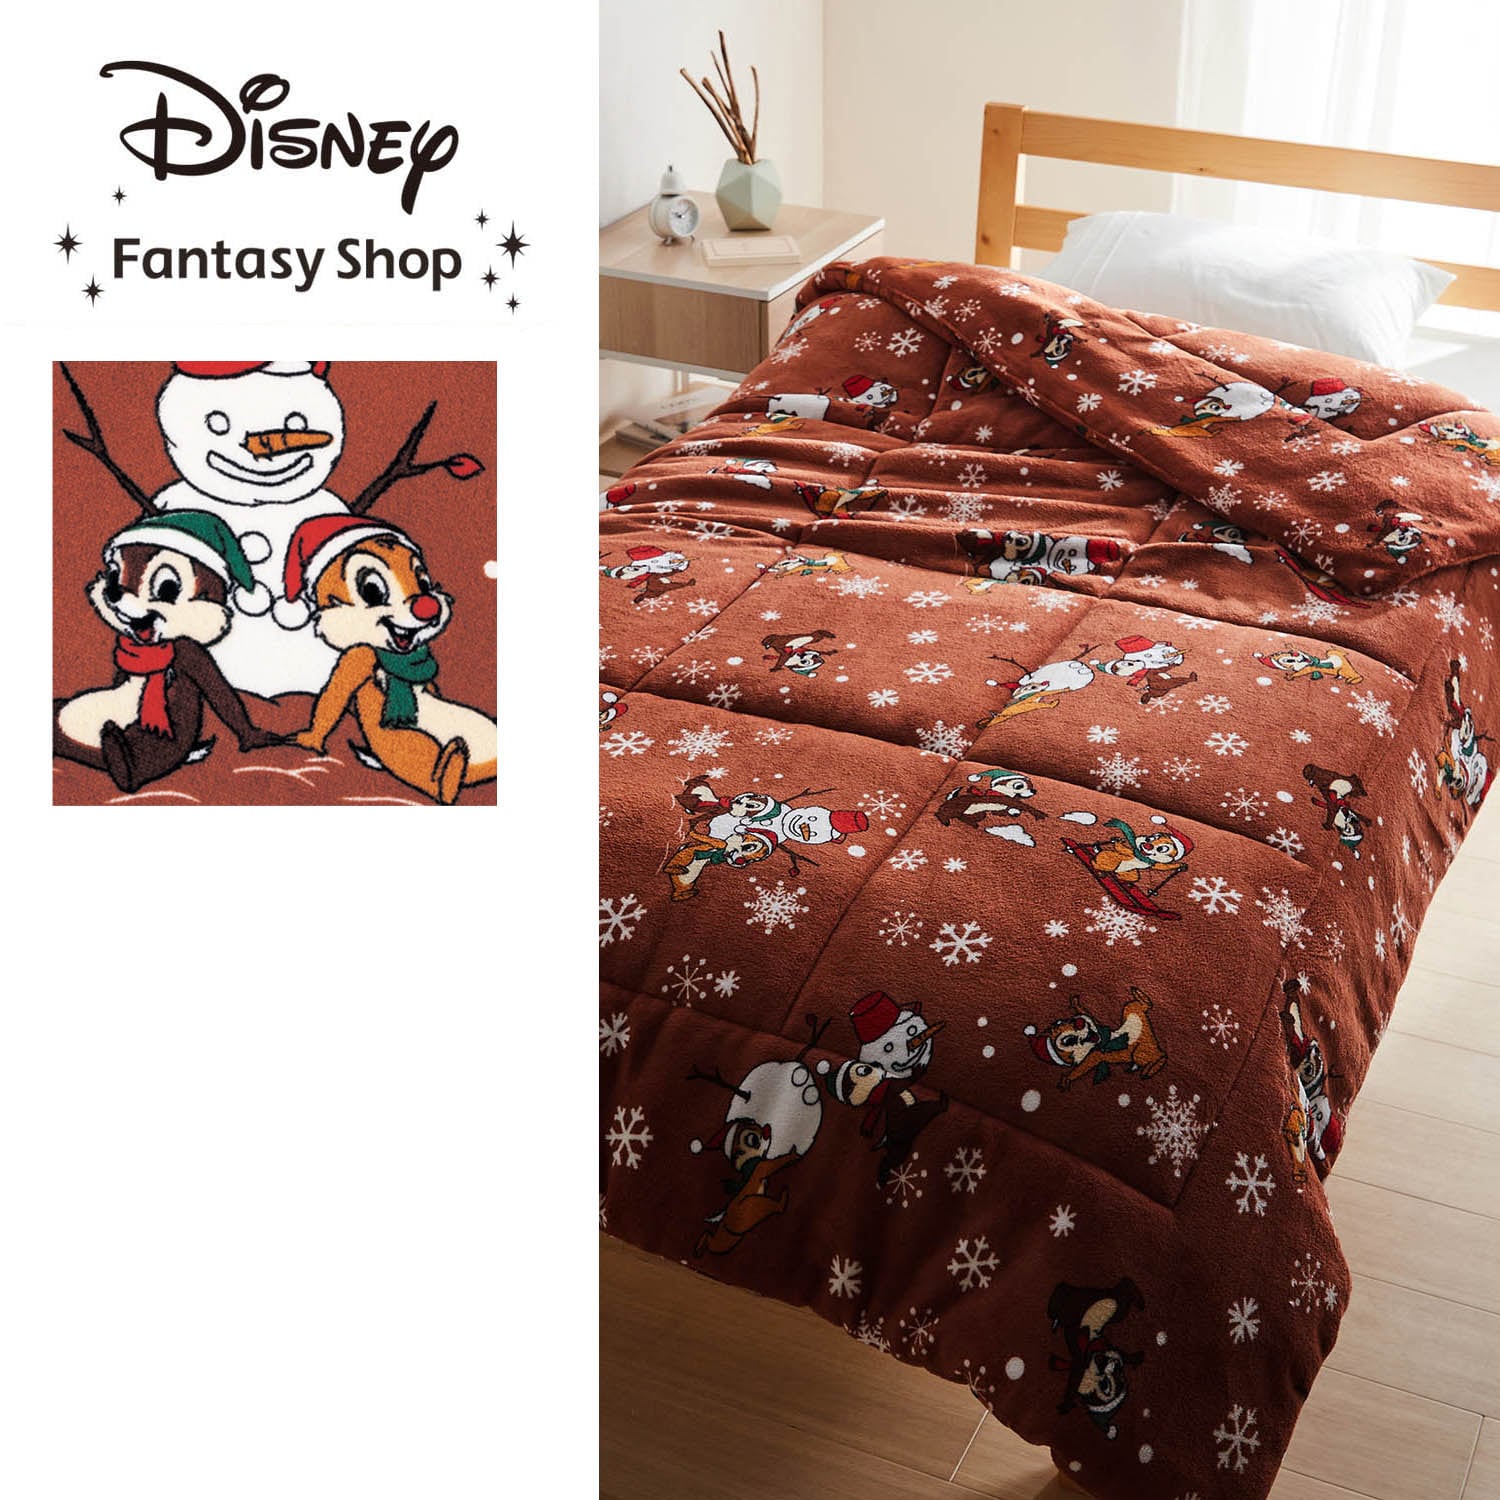 【ディズニー/Disney】【新柄登場】 ボリュームわた入り毛布(選べるキャラクター)